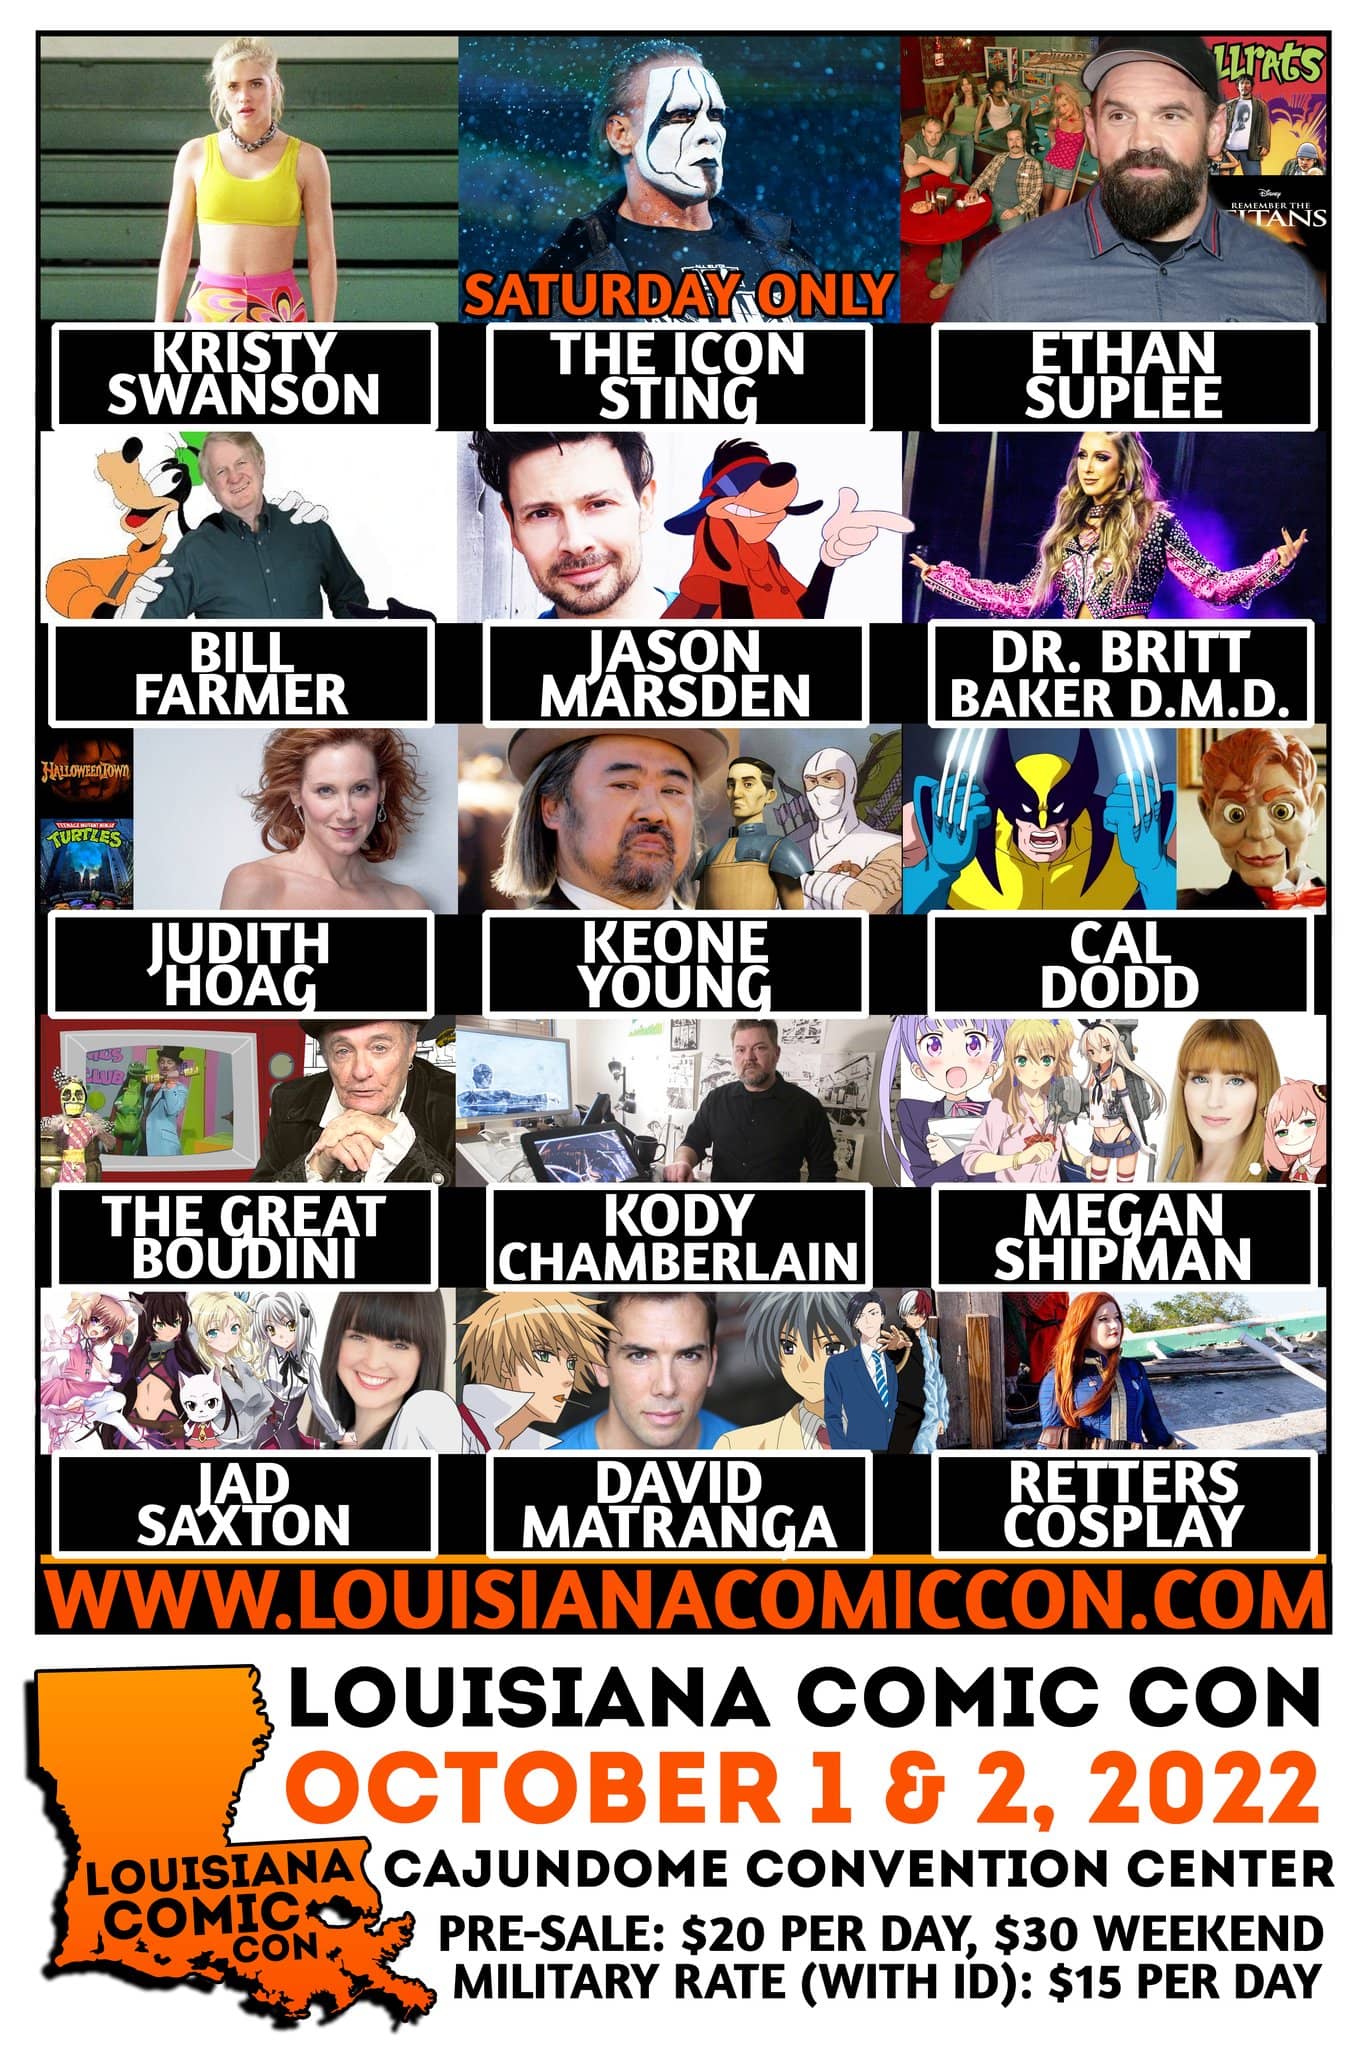 2022 Louisiana Comic Con at the Cajundome Convention Center Big 102.1